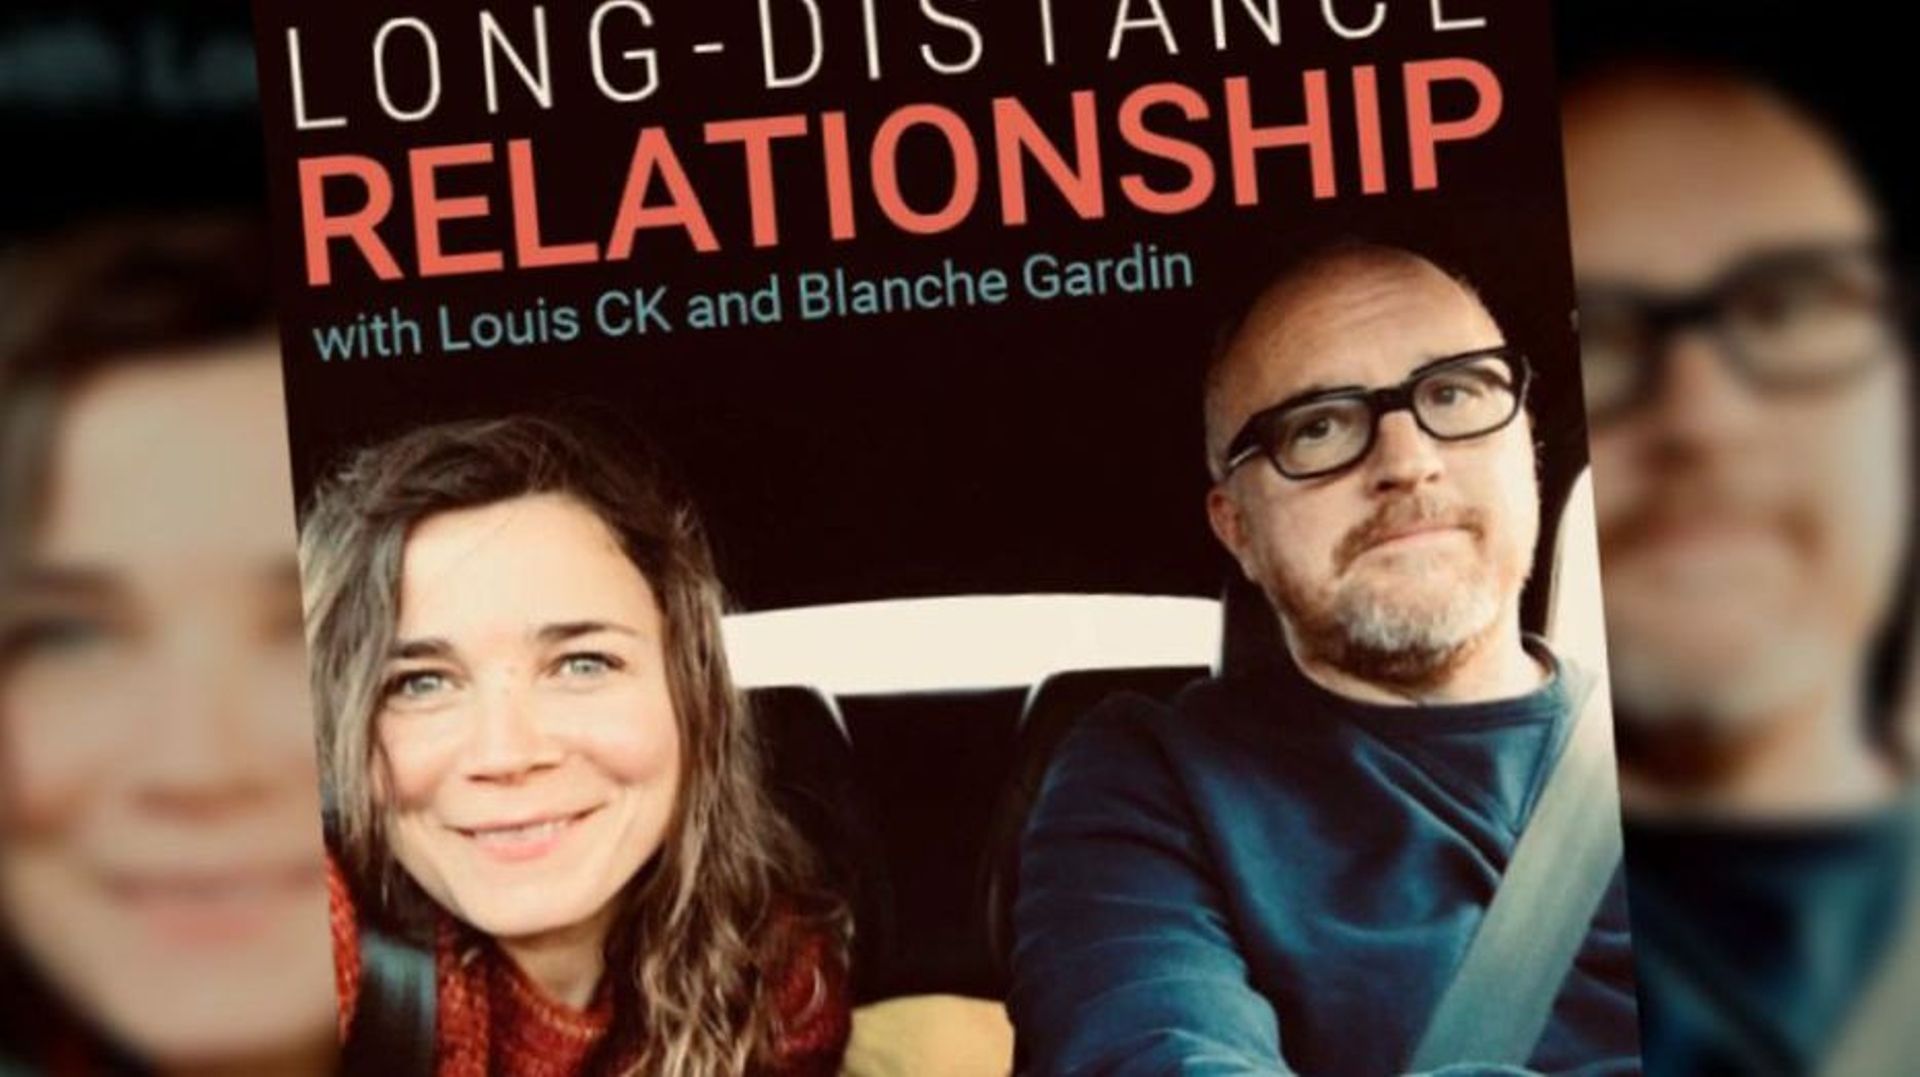 long-distance-relationship-le-nouveau-podcast-de-blanche-gardin-et-son-compagnon-louic-ck